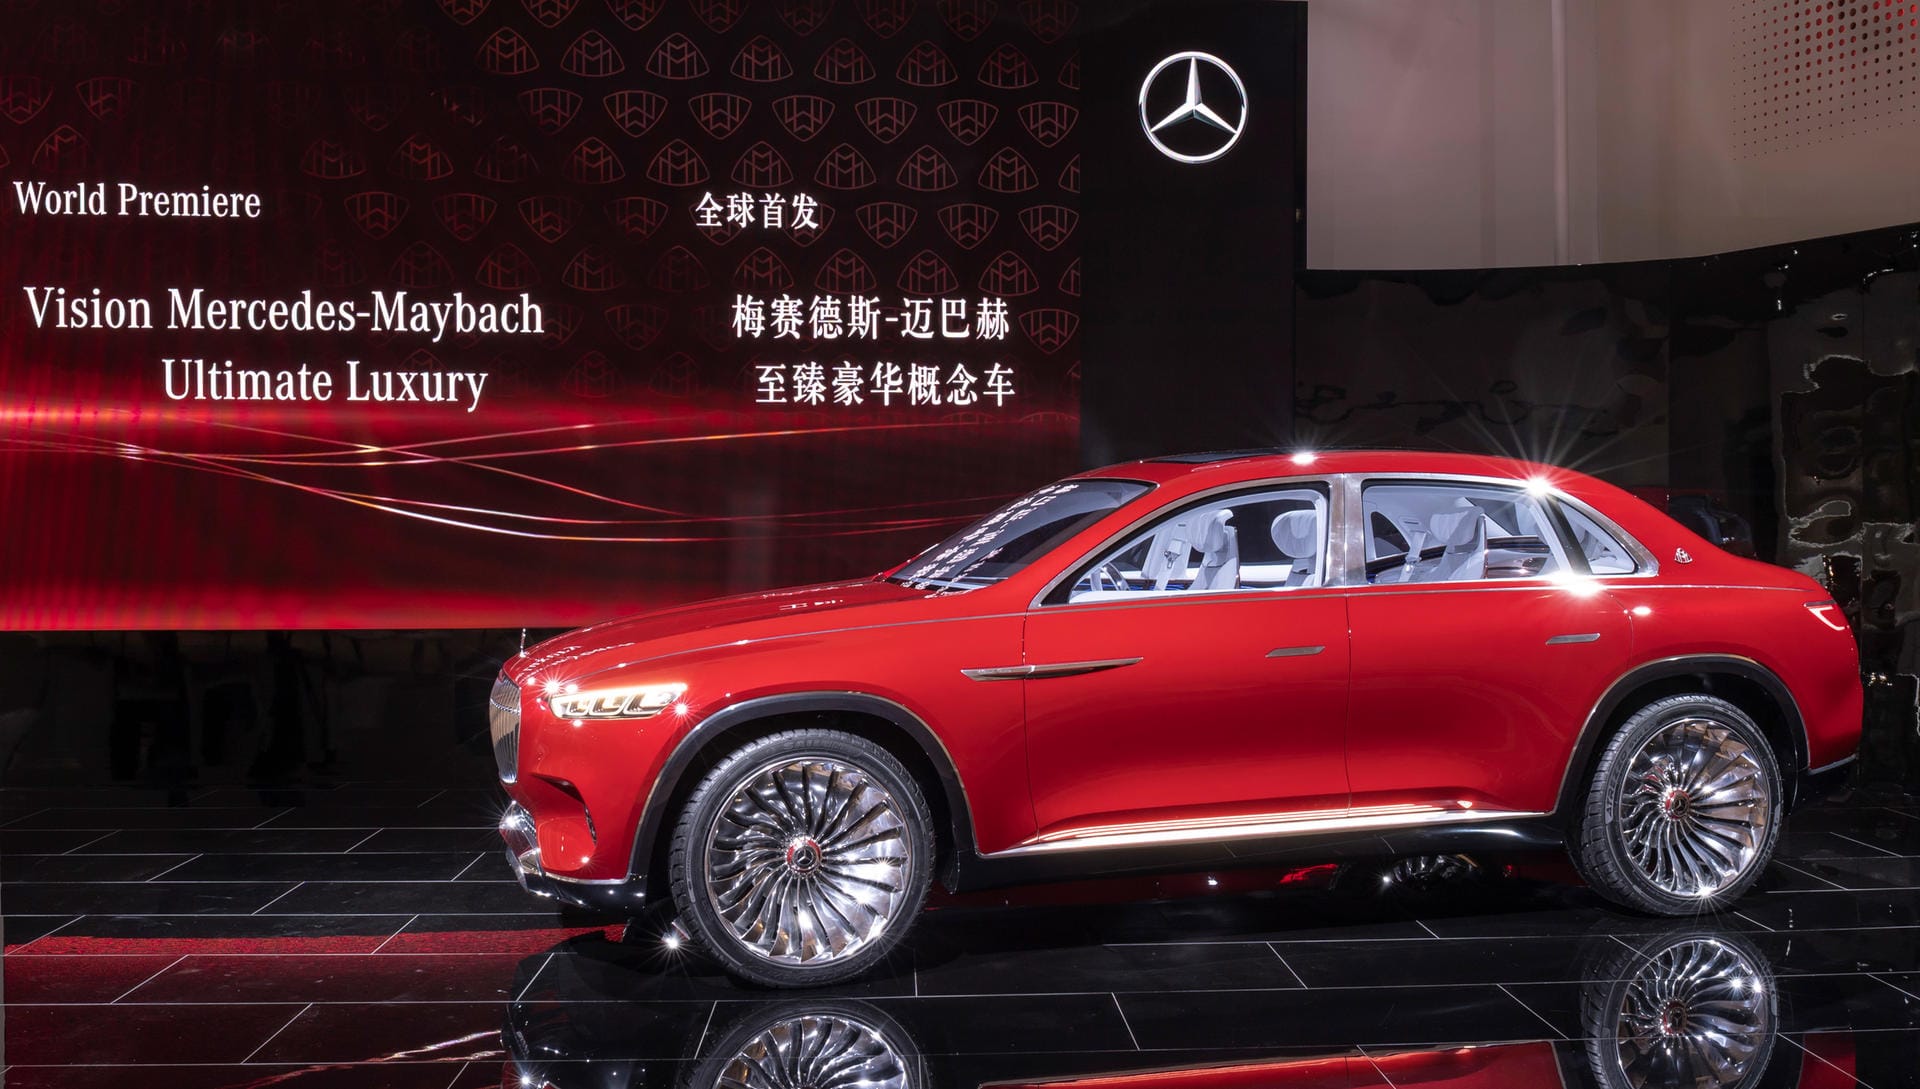 Mercedes-Maybach Ultimate Luxury: Riesige Räder, SUV-Bauweise, Unmengen an Platz und Luxus – und ein Stufenheck! Maybach vereint in seinem Entwurf alles, was zumindest der chinesische Geschmack begehrt.